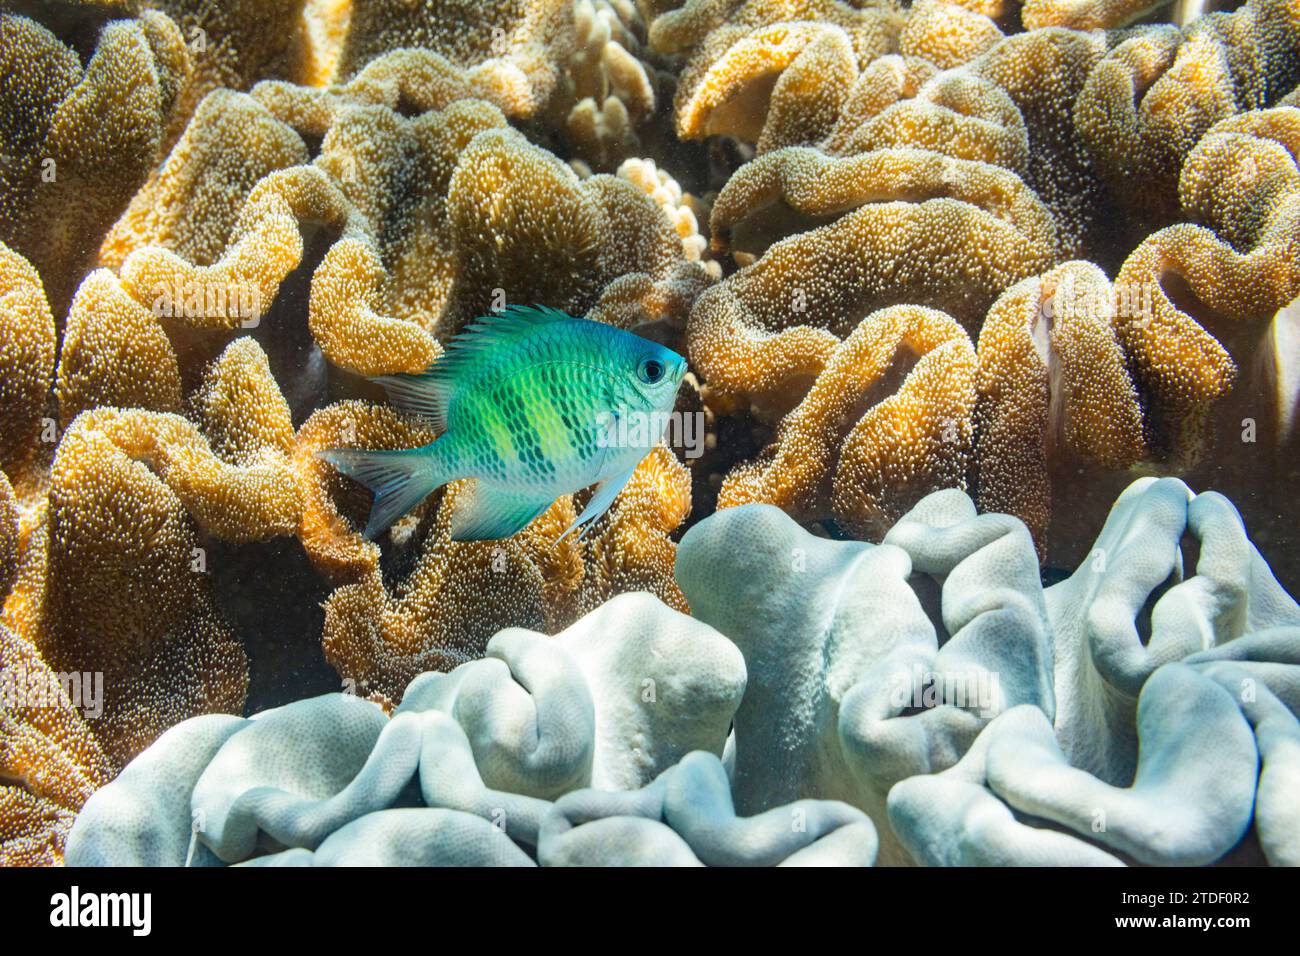 Un sergente maggiore Indo-Pacifico adulto (Abudefduf vaigiensis) sulla barriera corallina al largo di Arborek Reef, Raja Ampat, Indonesia, Sud-Est asiatico, Asia Foto Stock